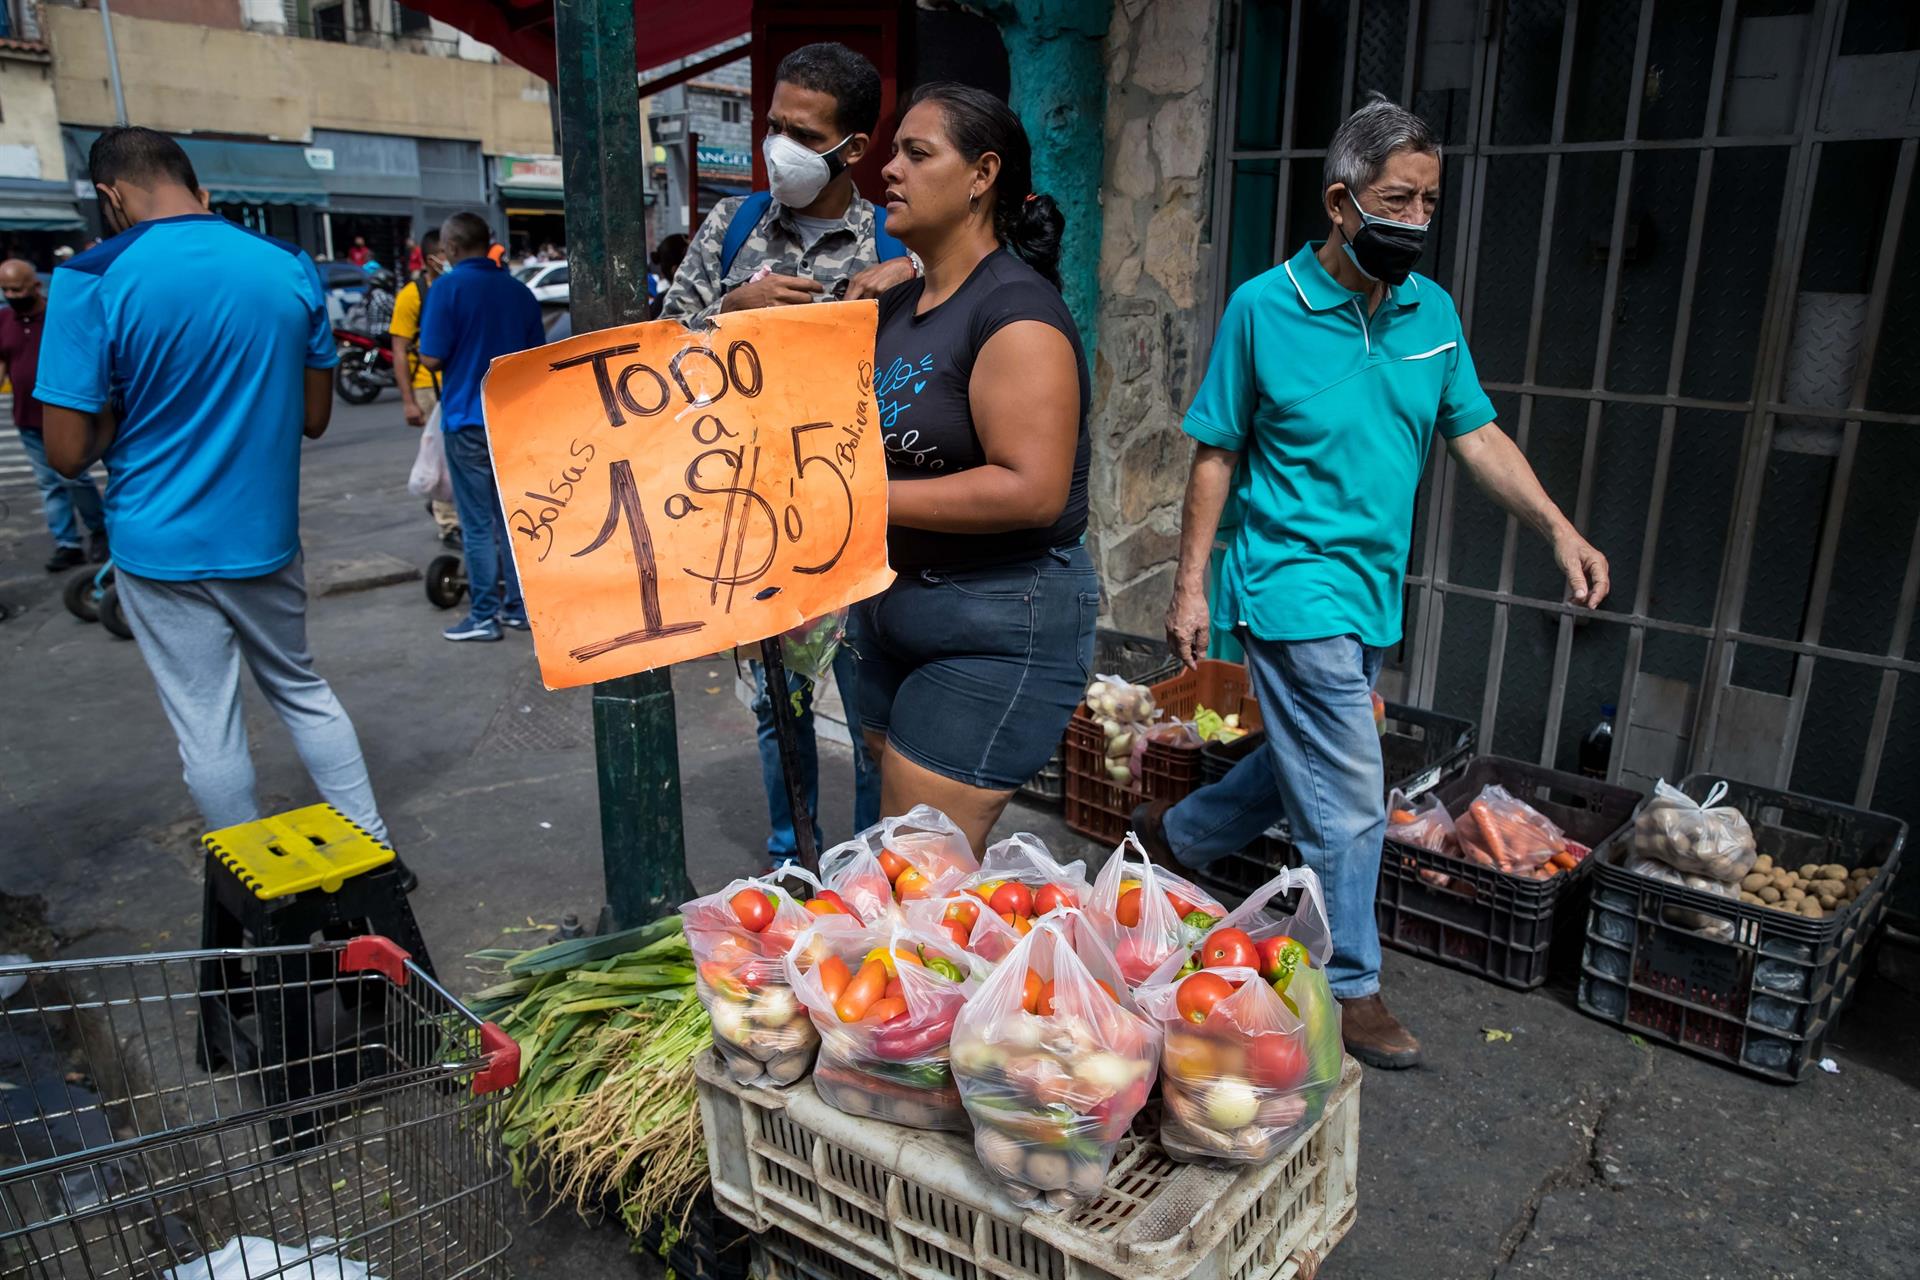 Nuevo aumento salarial en Venezuela “quedó corto” para cubrir la canasta básica